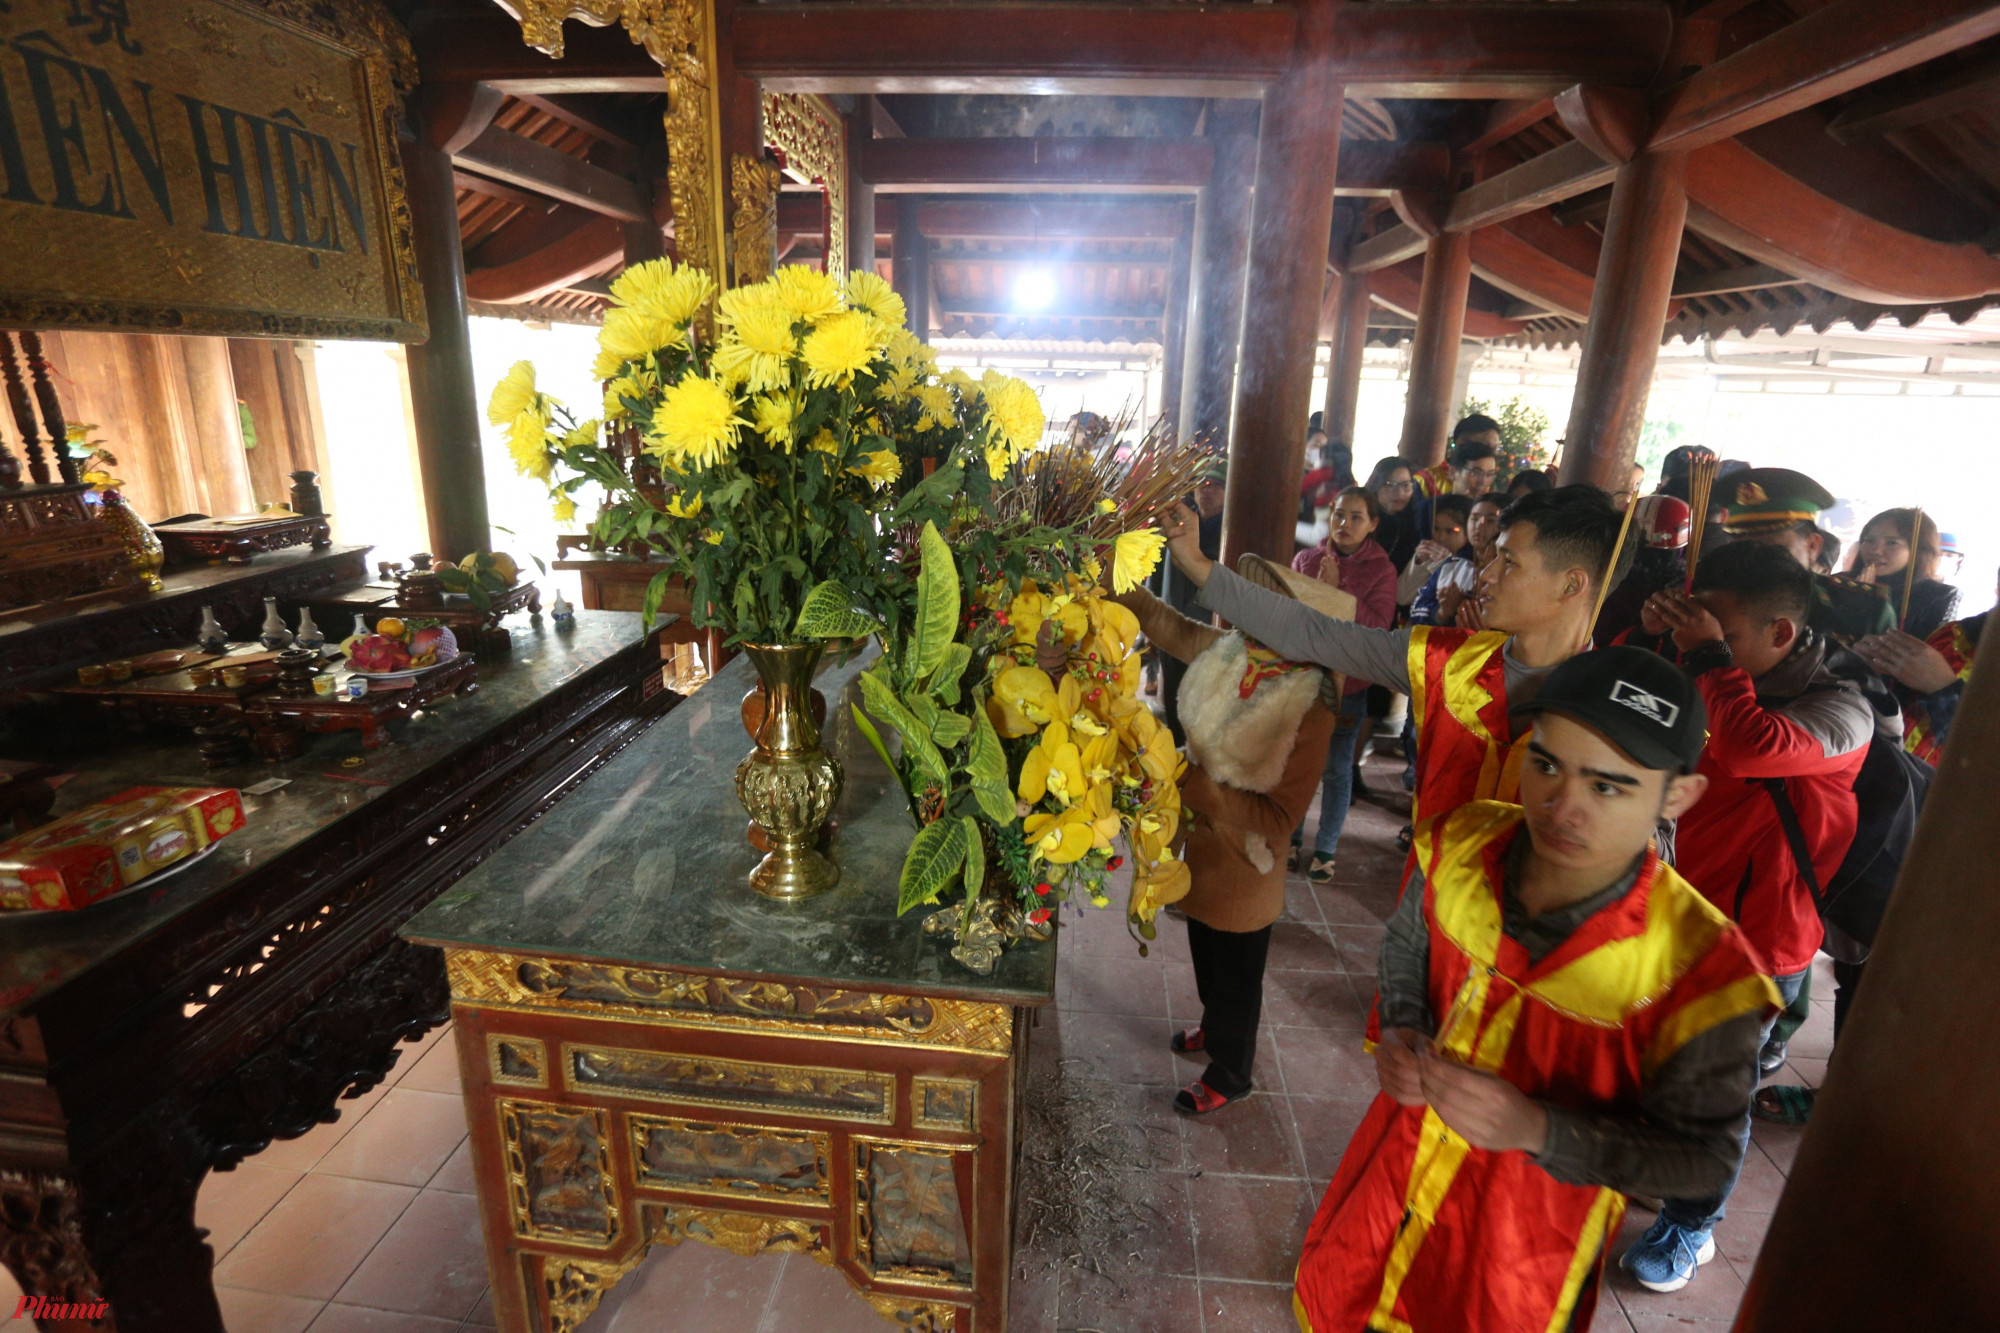 Đoàn rước dừng chân ở các đền Công Đồng, khu di tích Sơn Phòng - Hàm Nghi, đền Trầm Lâm để làm lễ, dâng hương khi đi qua.